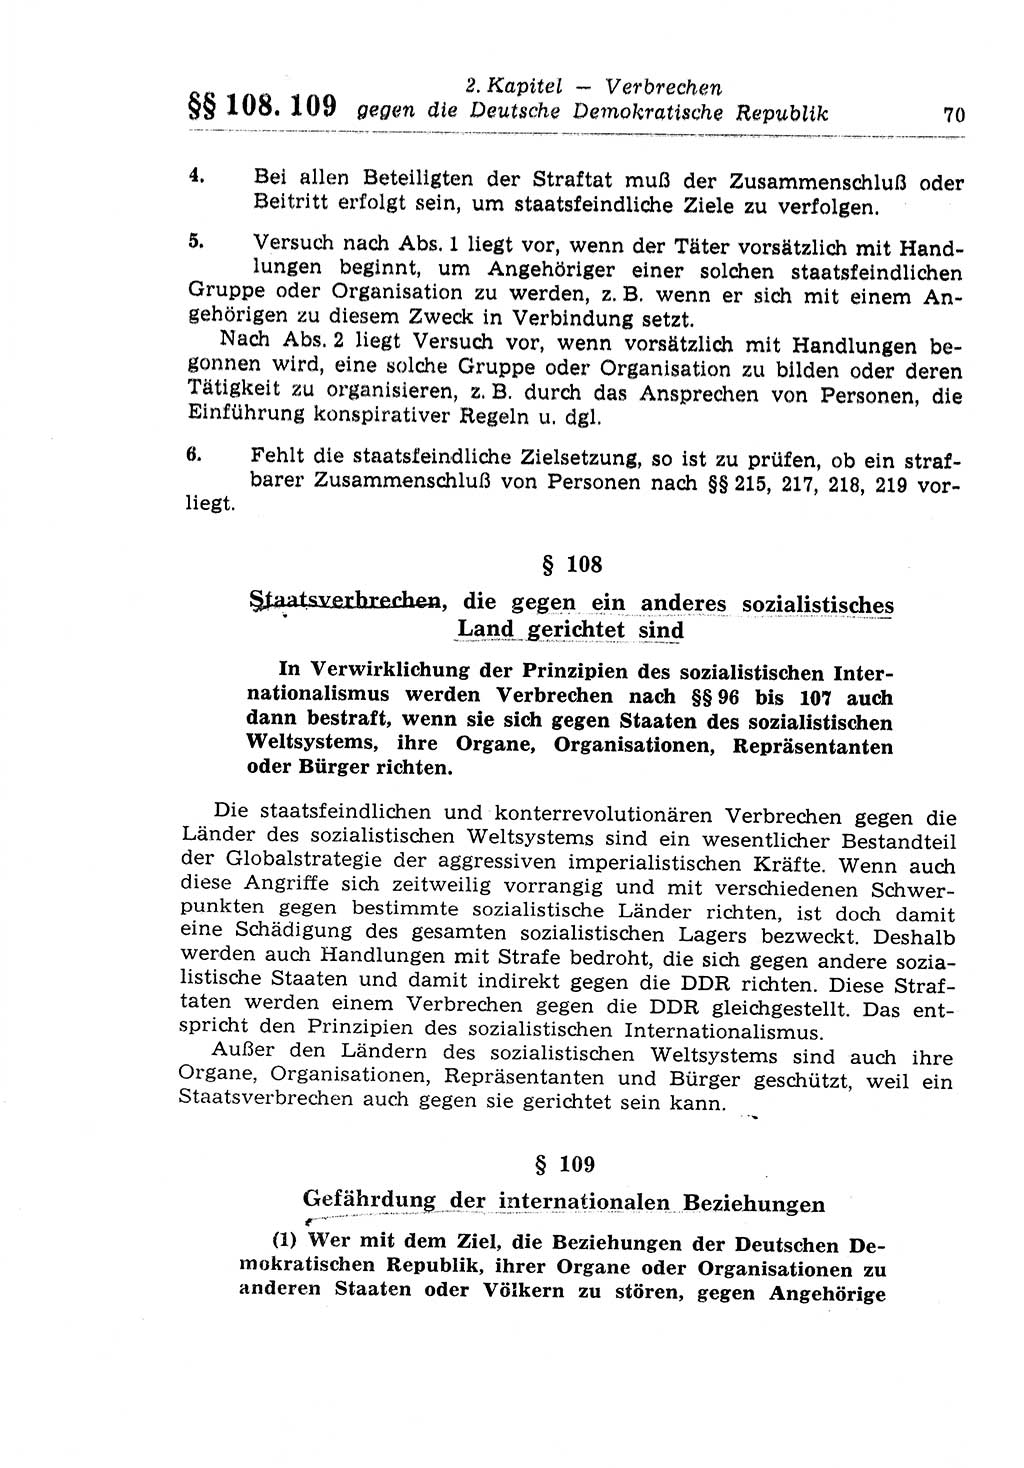 Strafrecht der Deutschen Demokratischen Republik (DDR), Lehrkommentar zum Strafgesetzbuch (StGB), Besonderer Teil 1970, Seite 70 (Strafr. DDR Lehrkomm. StGB BT 1970, S. 70)